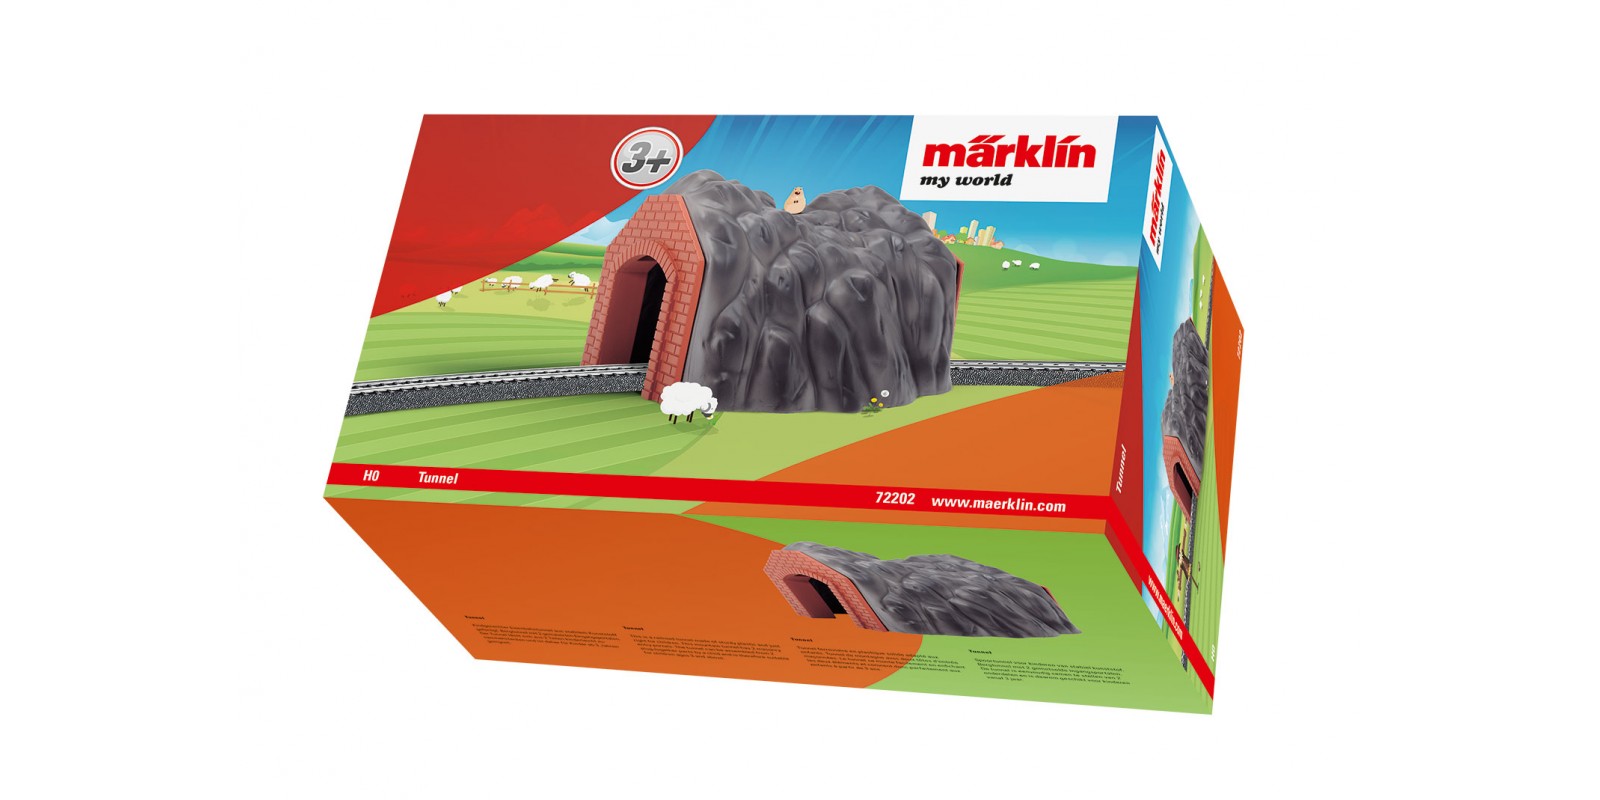 72202 Märklin my world - Tunnel